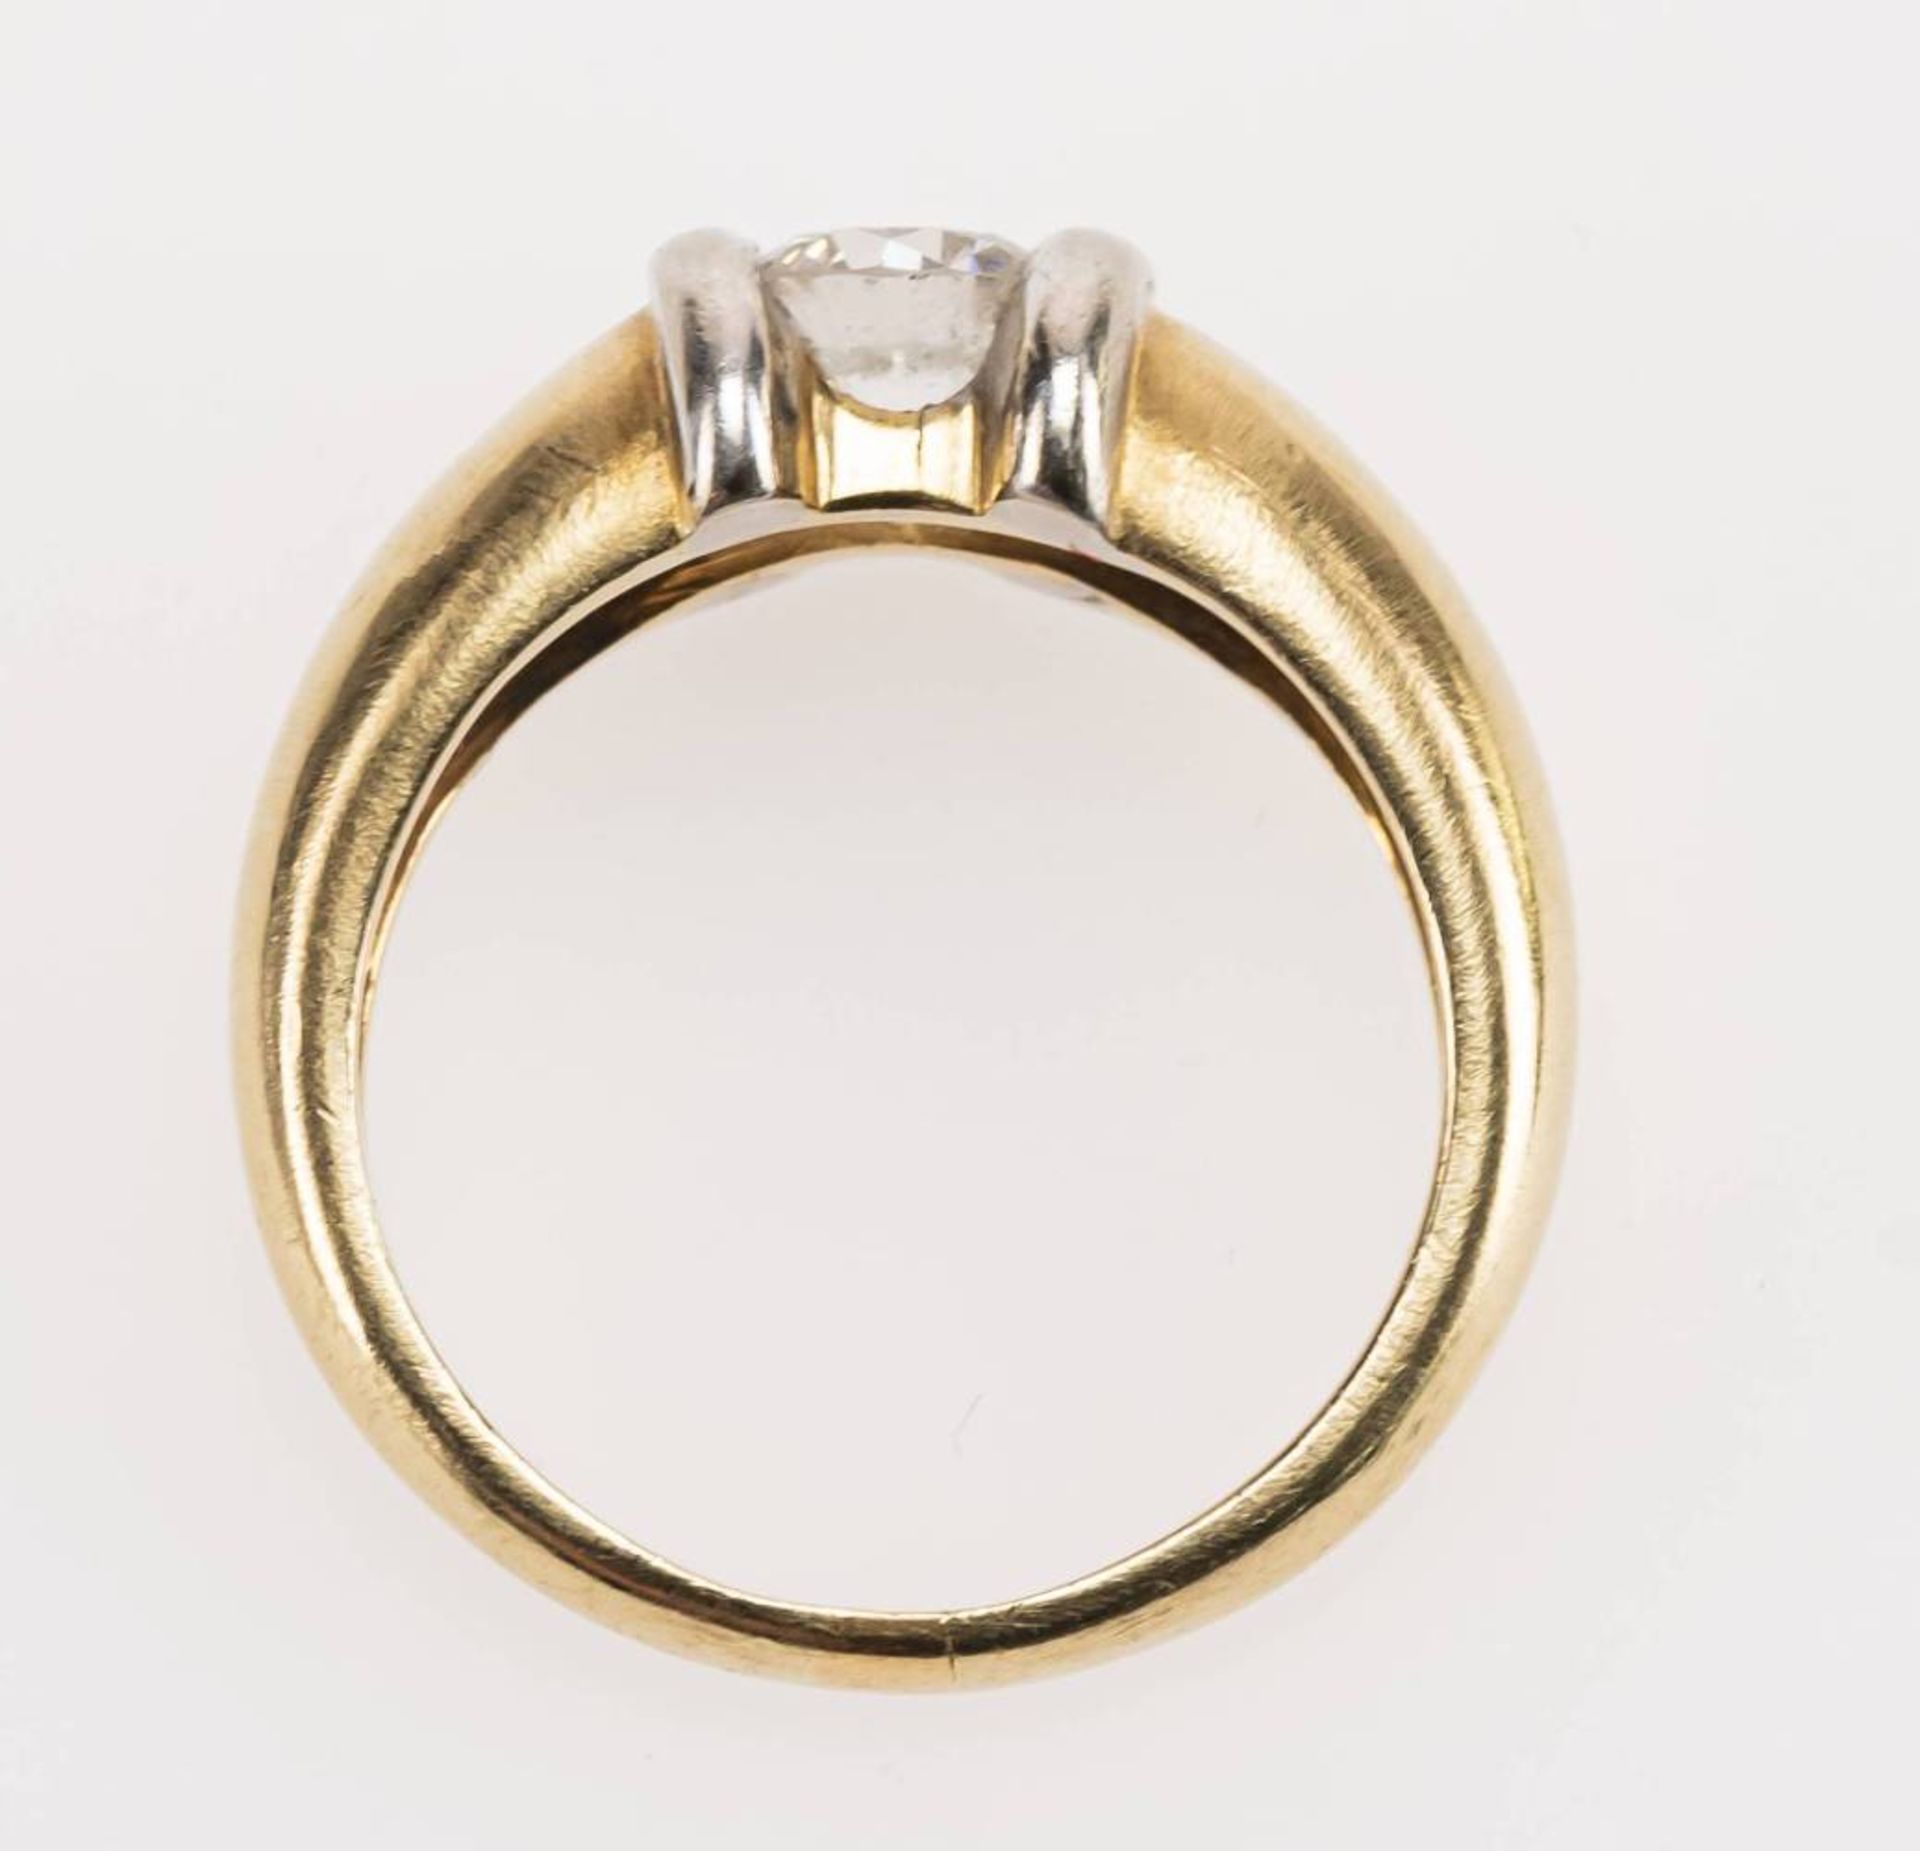 Brillant Ring, 585 Gold, bicolor, Brillant ca. 0,6ct, RW 54, ca. 6,99g. - Bild 4 aus 6